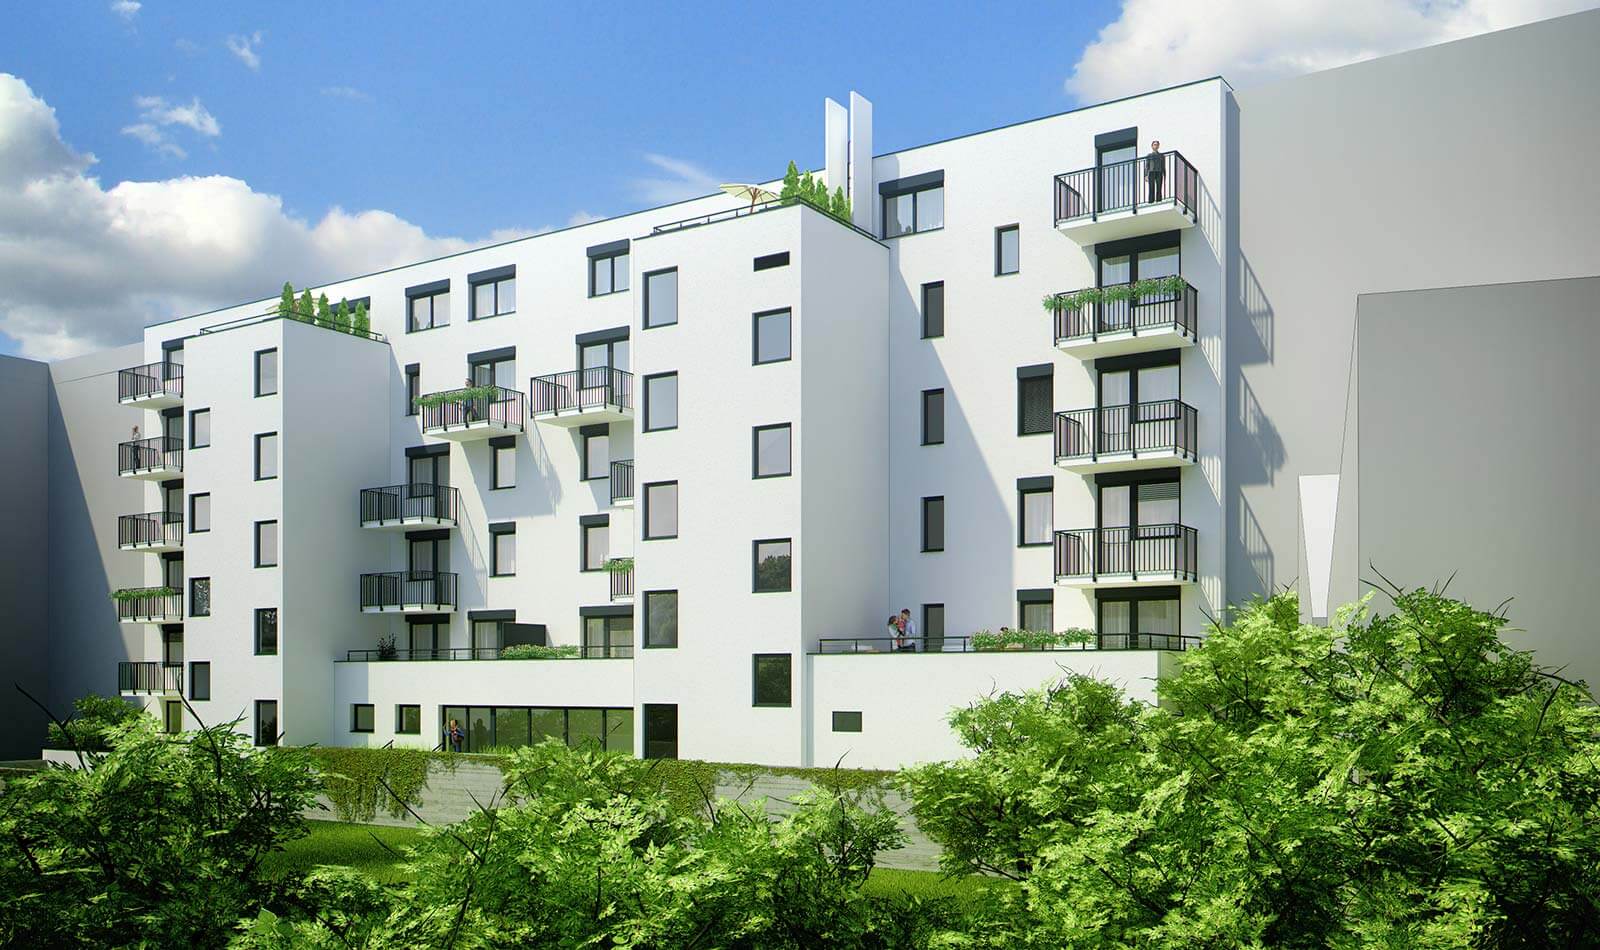 Predané: Novostavba posledný 1 izbový byt, širšie centrum v Bratislave, Beskydská ulica, 44,87m2, štandard, terasa 40m2,-9